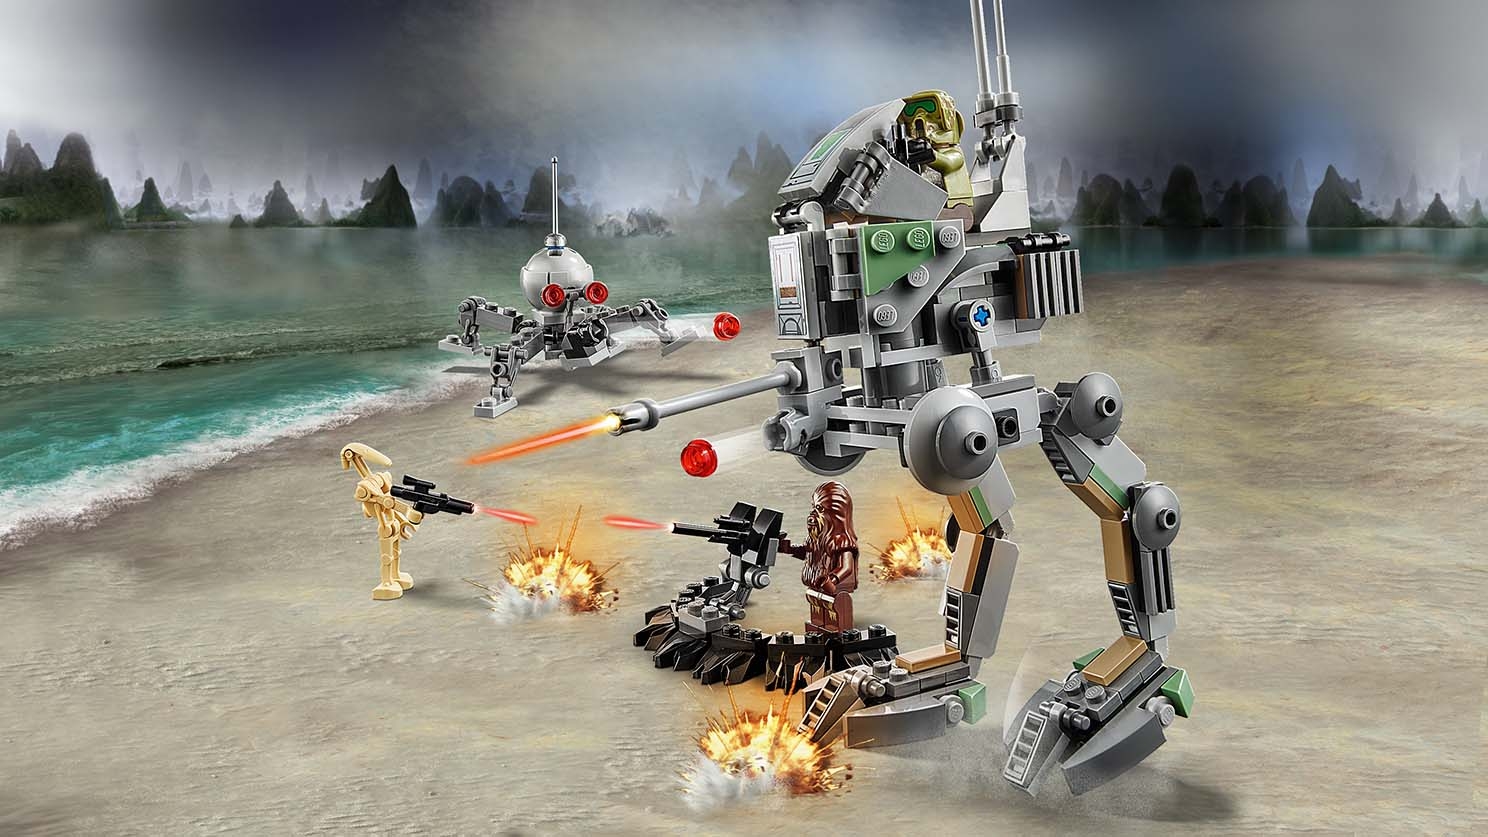 Desarmamiento analogía Sitio de Previs Caminante Explorador Clon (Edición 20 Aniversario) 75261 - Sets LEGO® Star  Wars™ - LEGO.com para niños